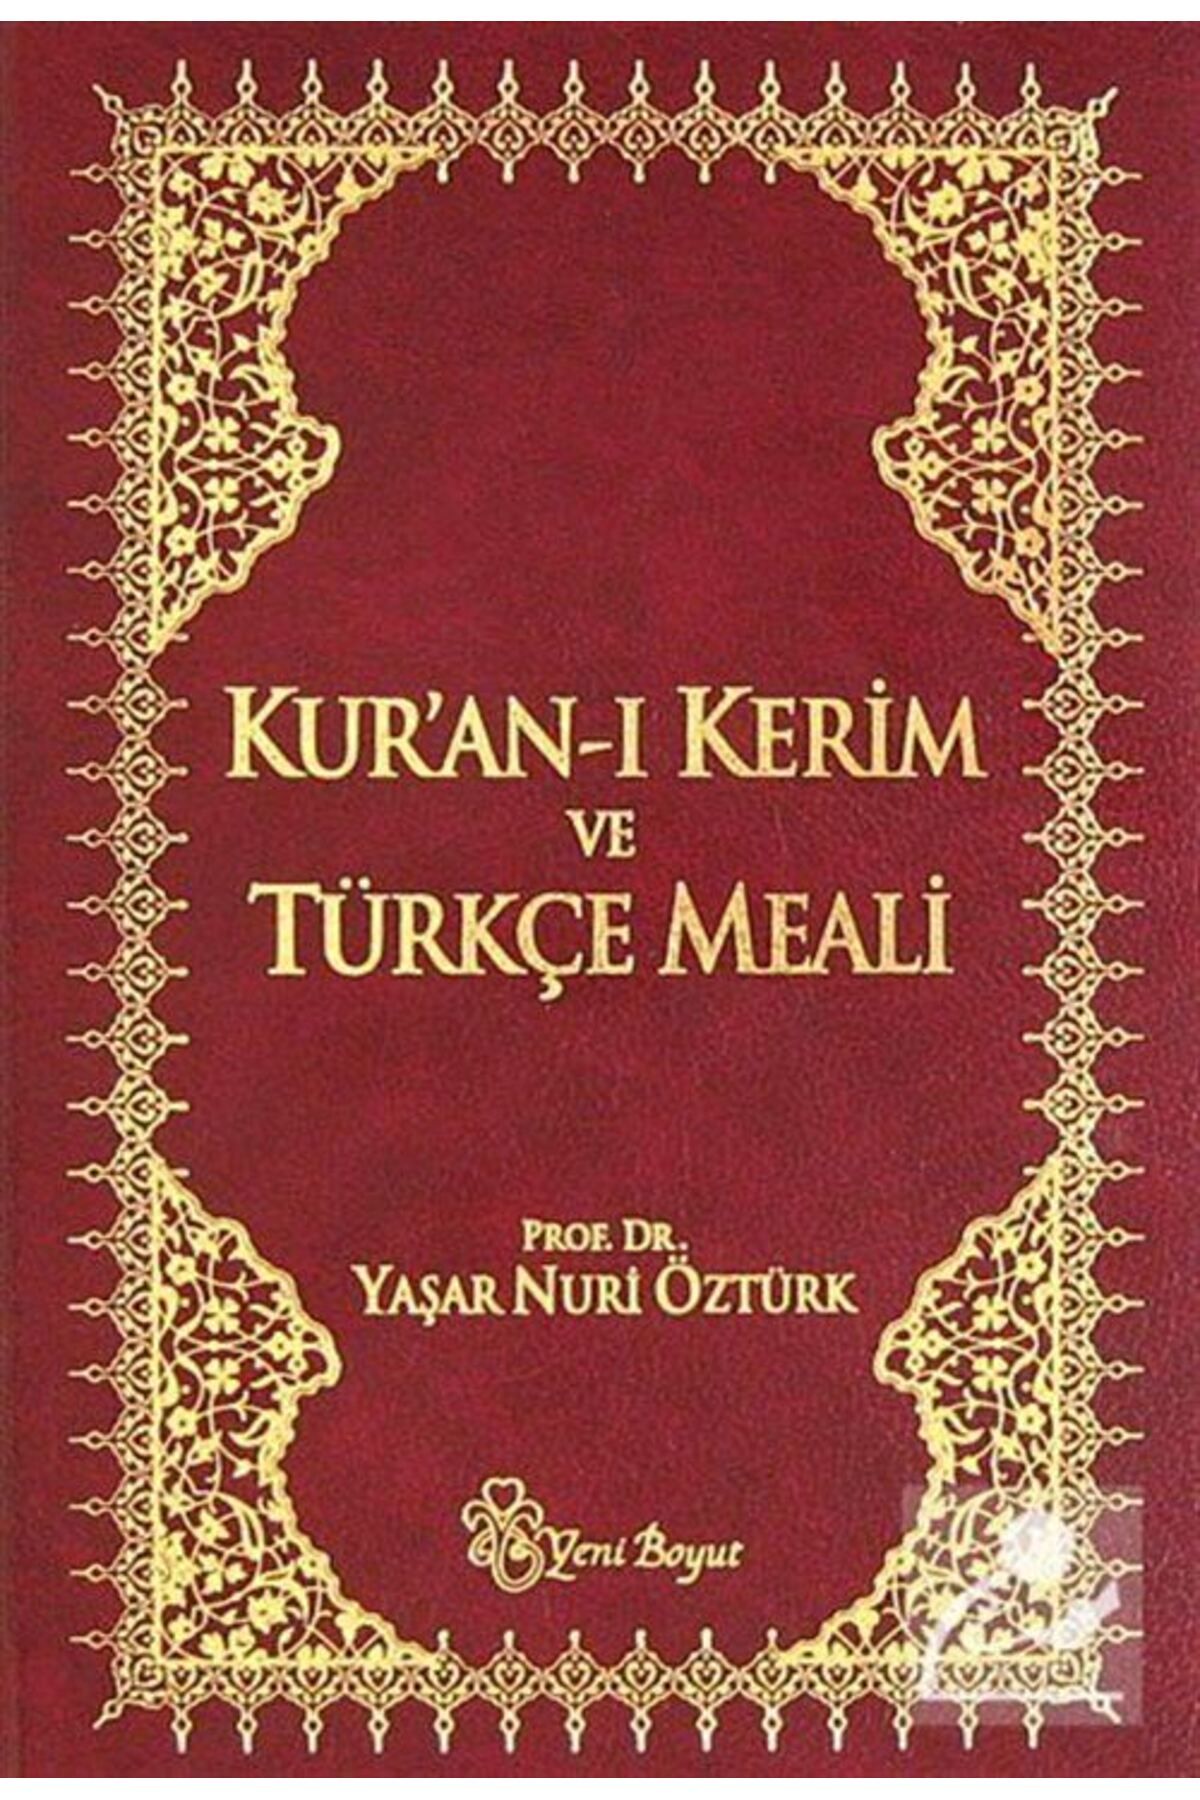 Yeni Boyut Yayınları Kuranı Kerim Ve Türkçe Meali (METİNLİ-KÜÇÜK BOY) (CİLTLİ)